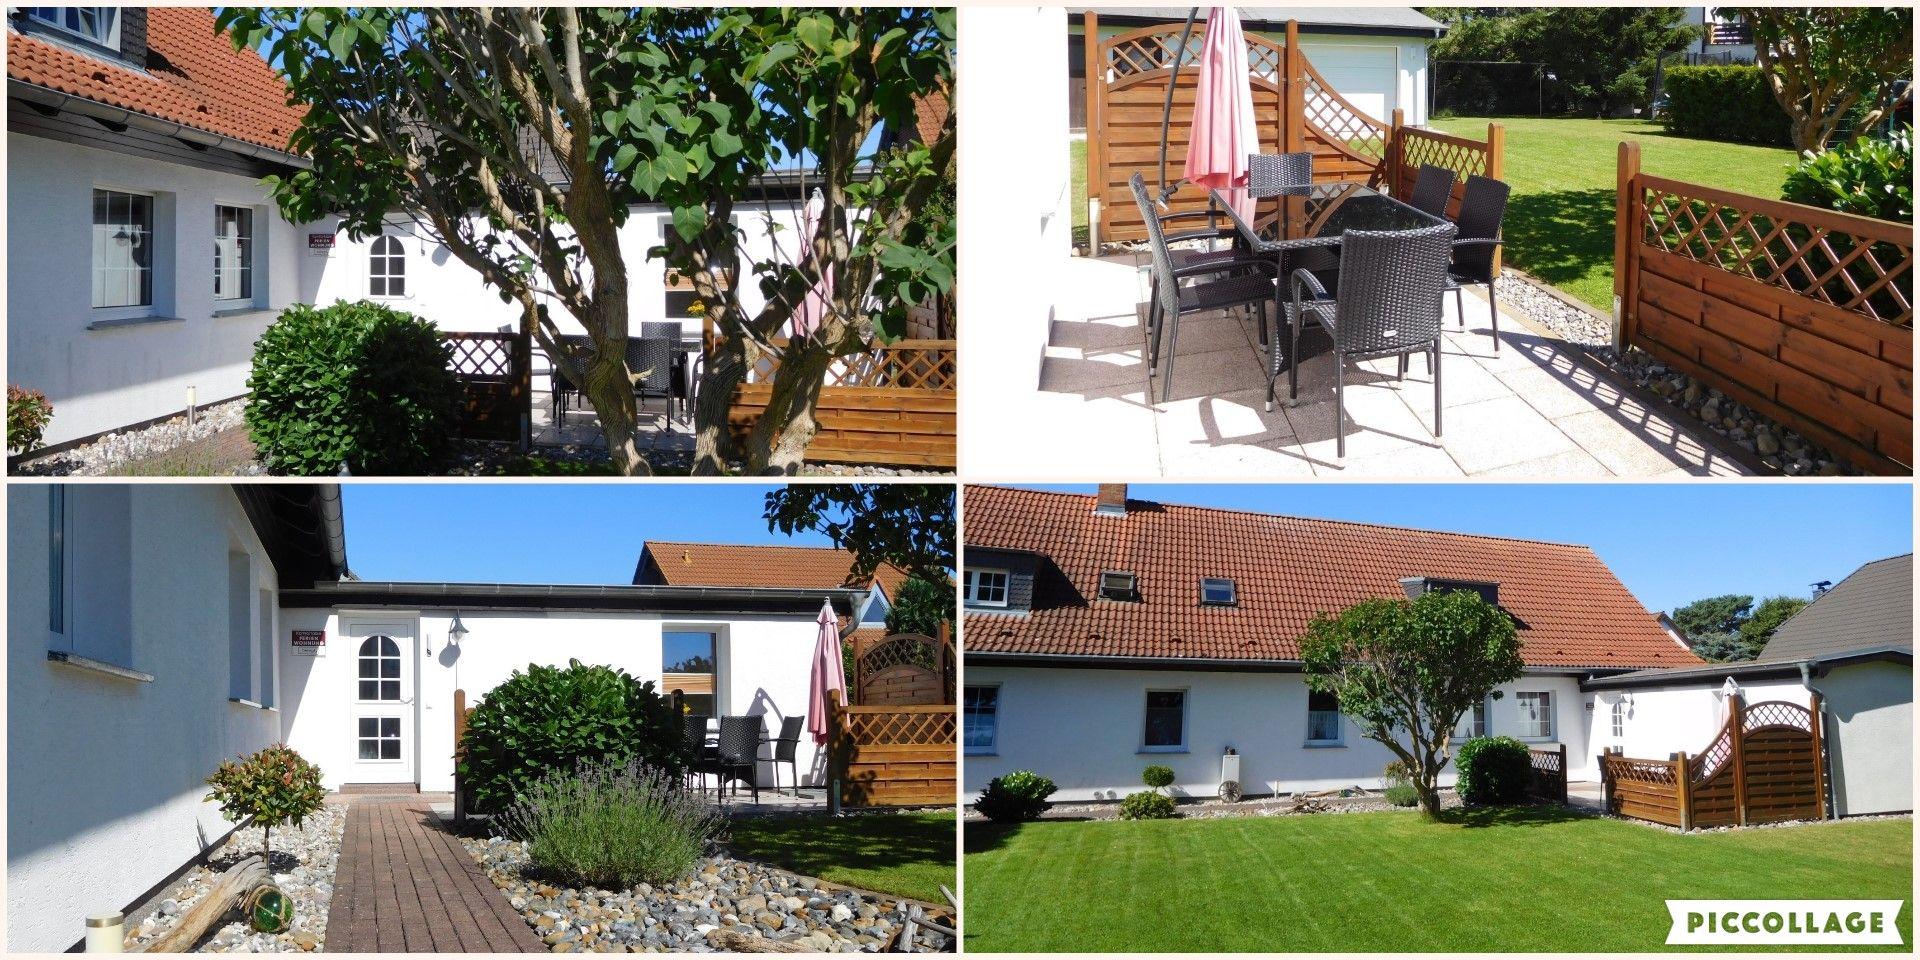 Ferienwohnung für 5 Personen ca. 85 m² i Ferienhaus auf Usedom